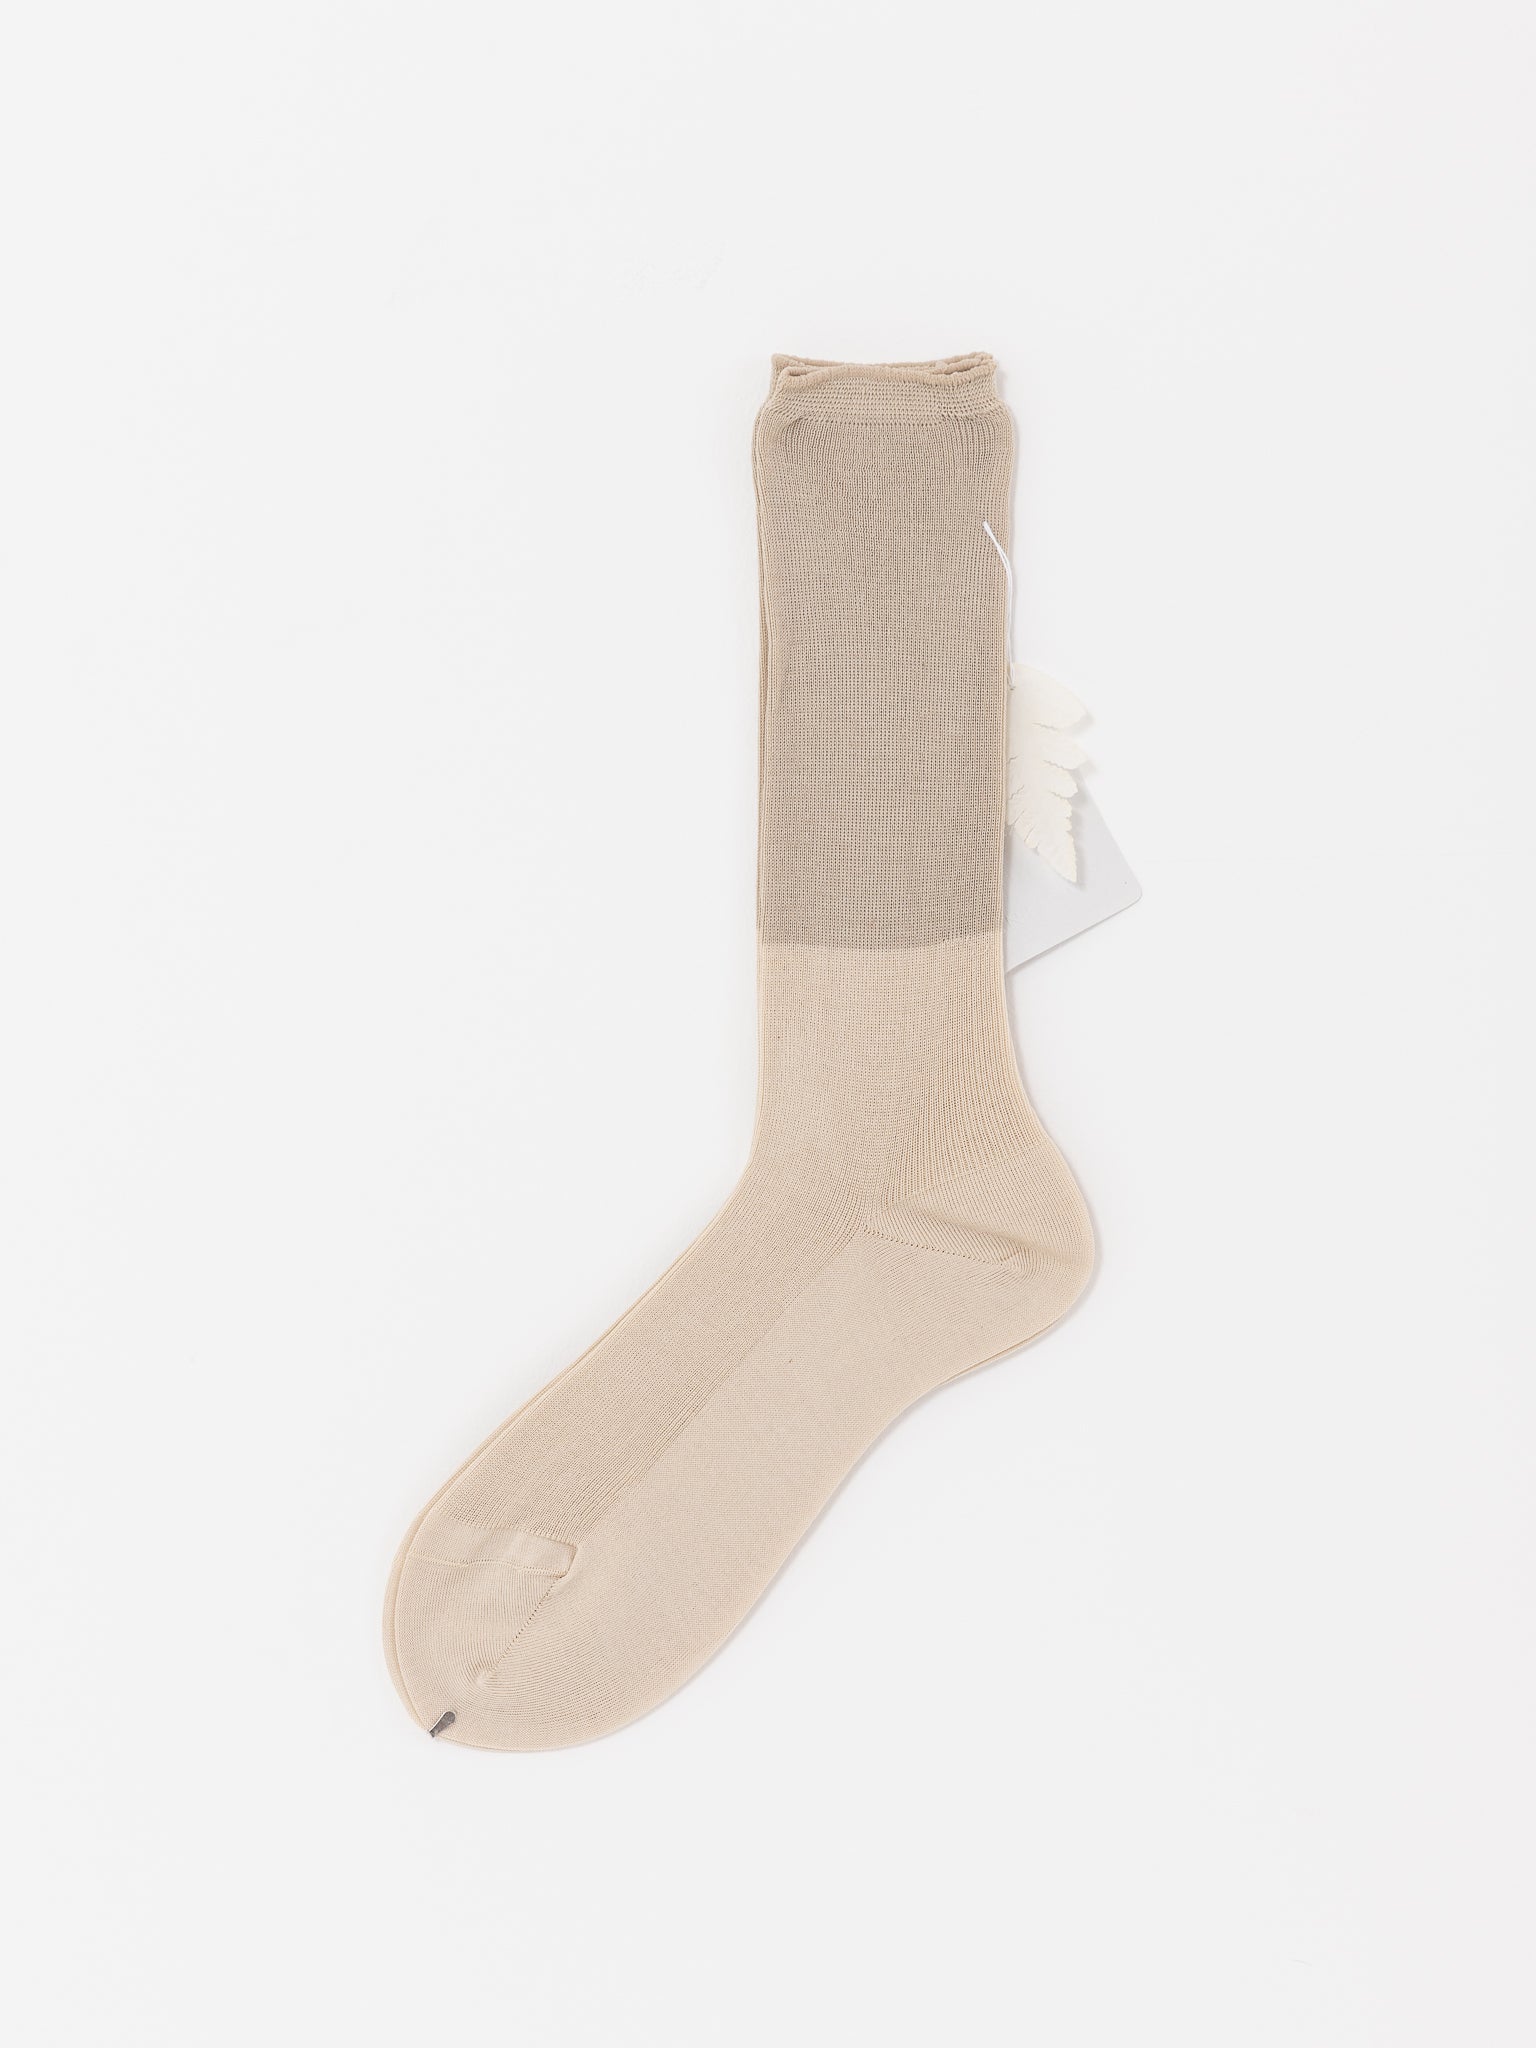 Antipast Two Tone Rib Socks, Ivory/Beige - Worthwhile